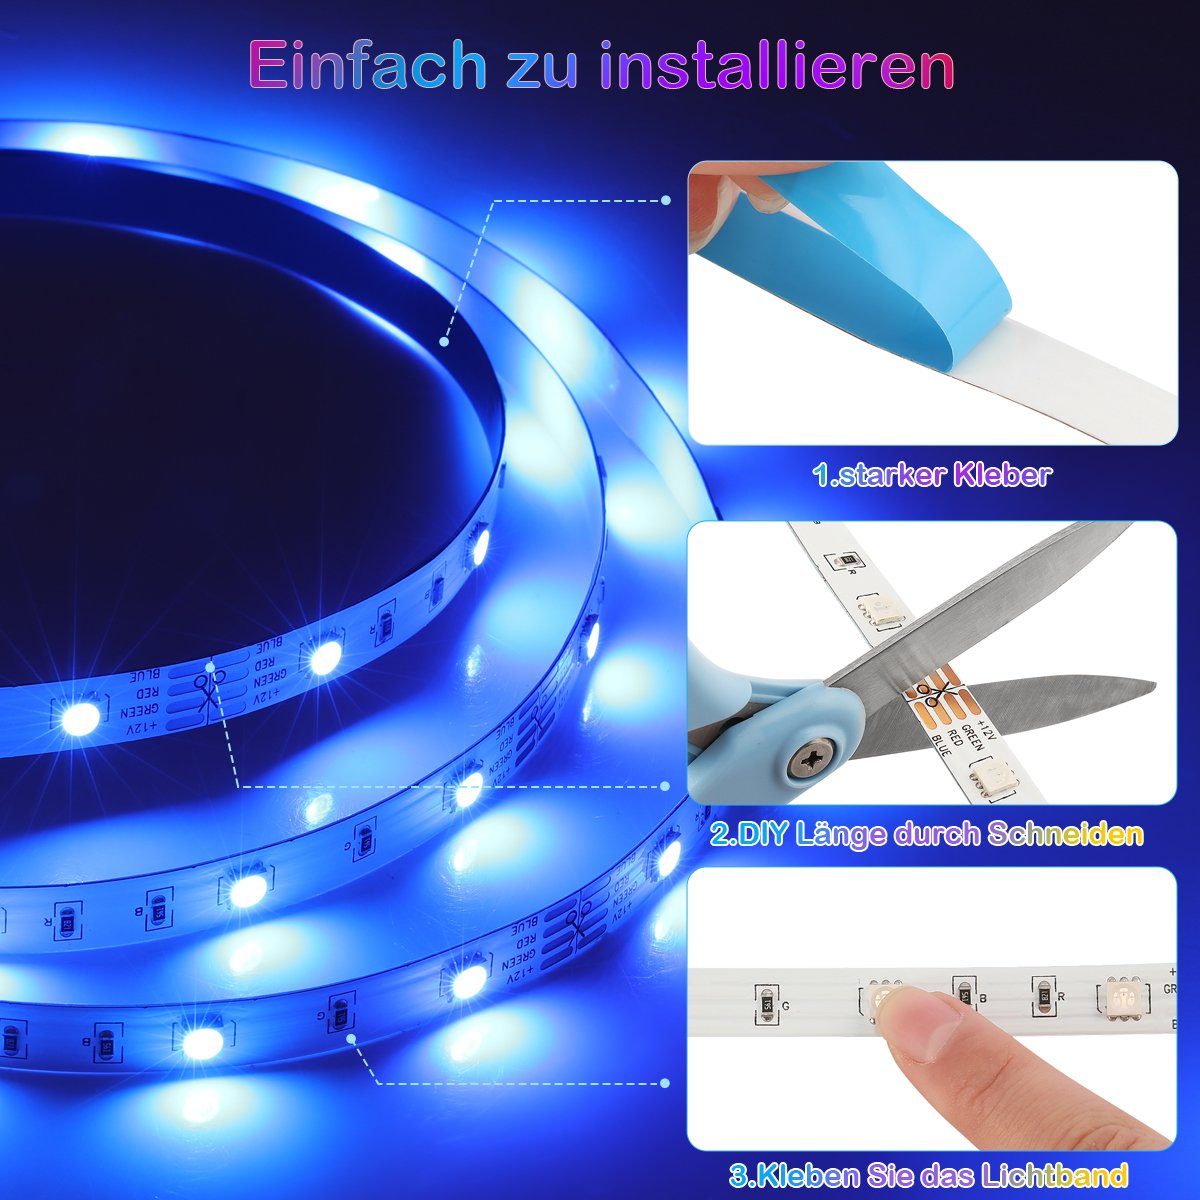 LED Dimmbar, Nur Timer-Einstellung / LETGOSPT Strip 10m, Bluetooth/Wif RGB Sync, Stripe 5m Lichterkette LED-Streifen Dimmer, Musik Bluetooth, App-Steuerung, 5050